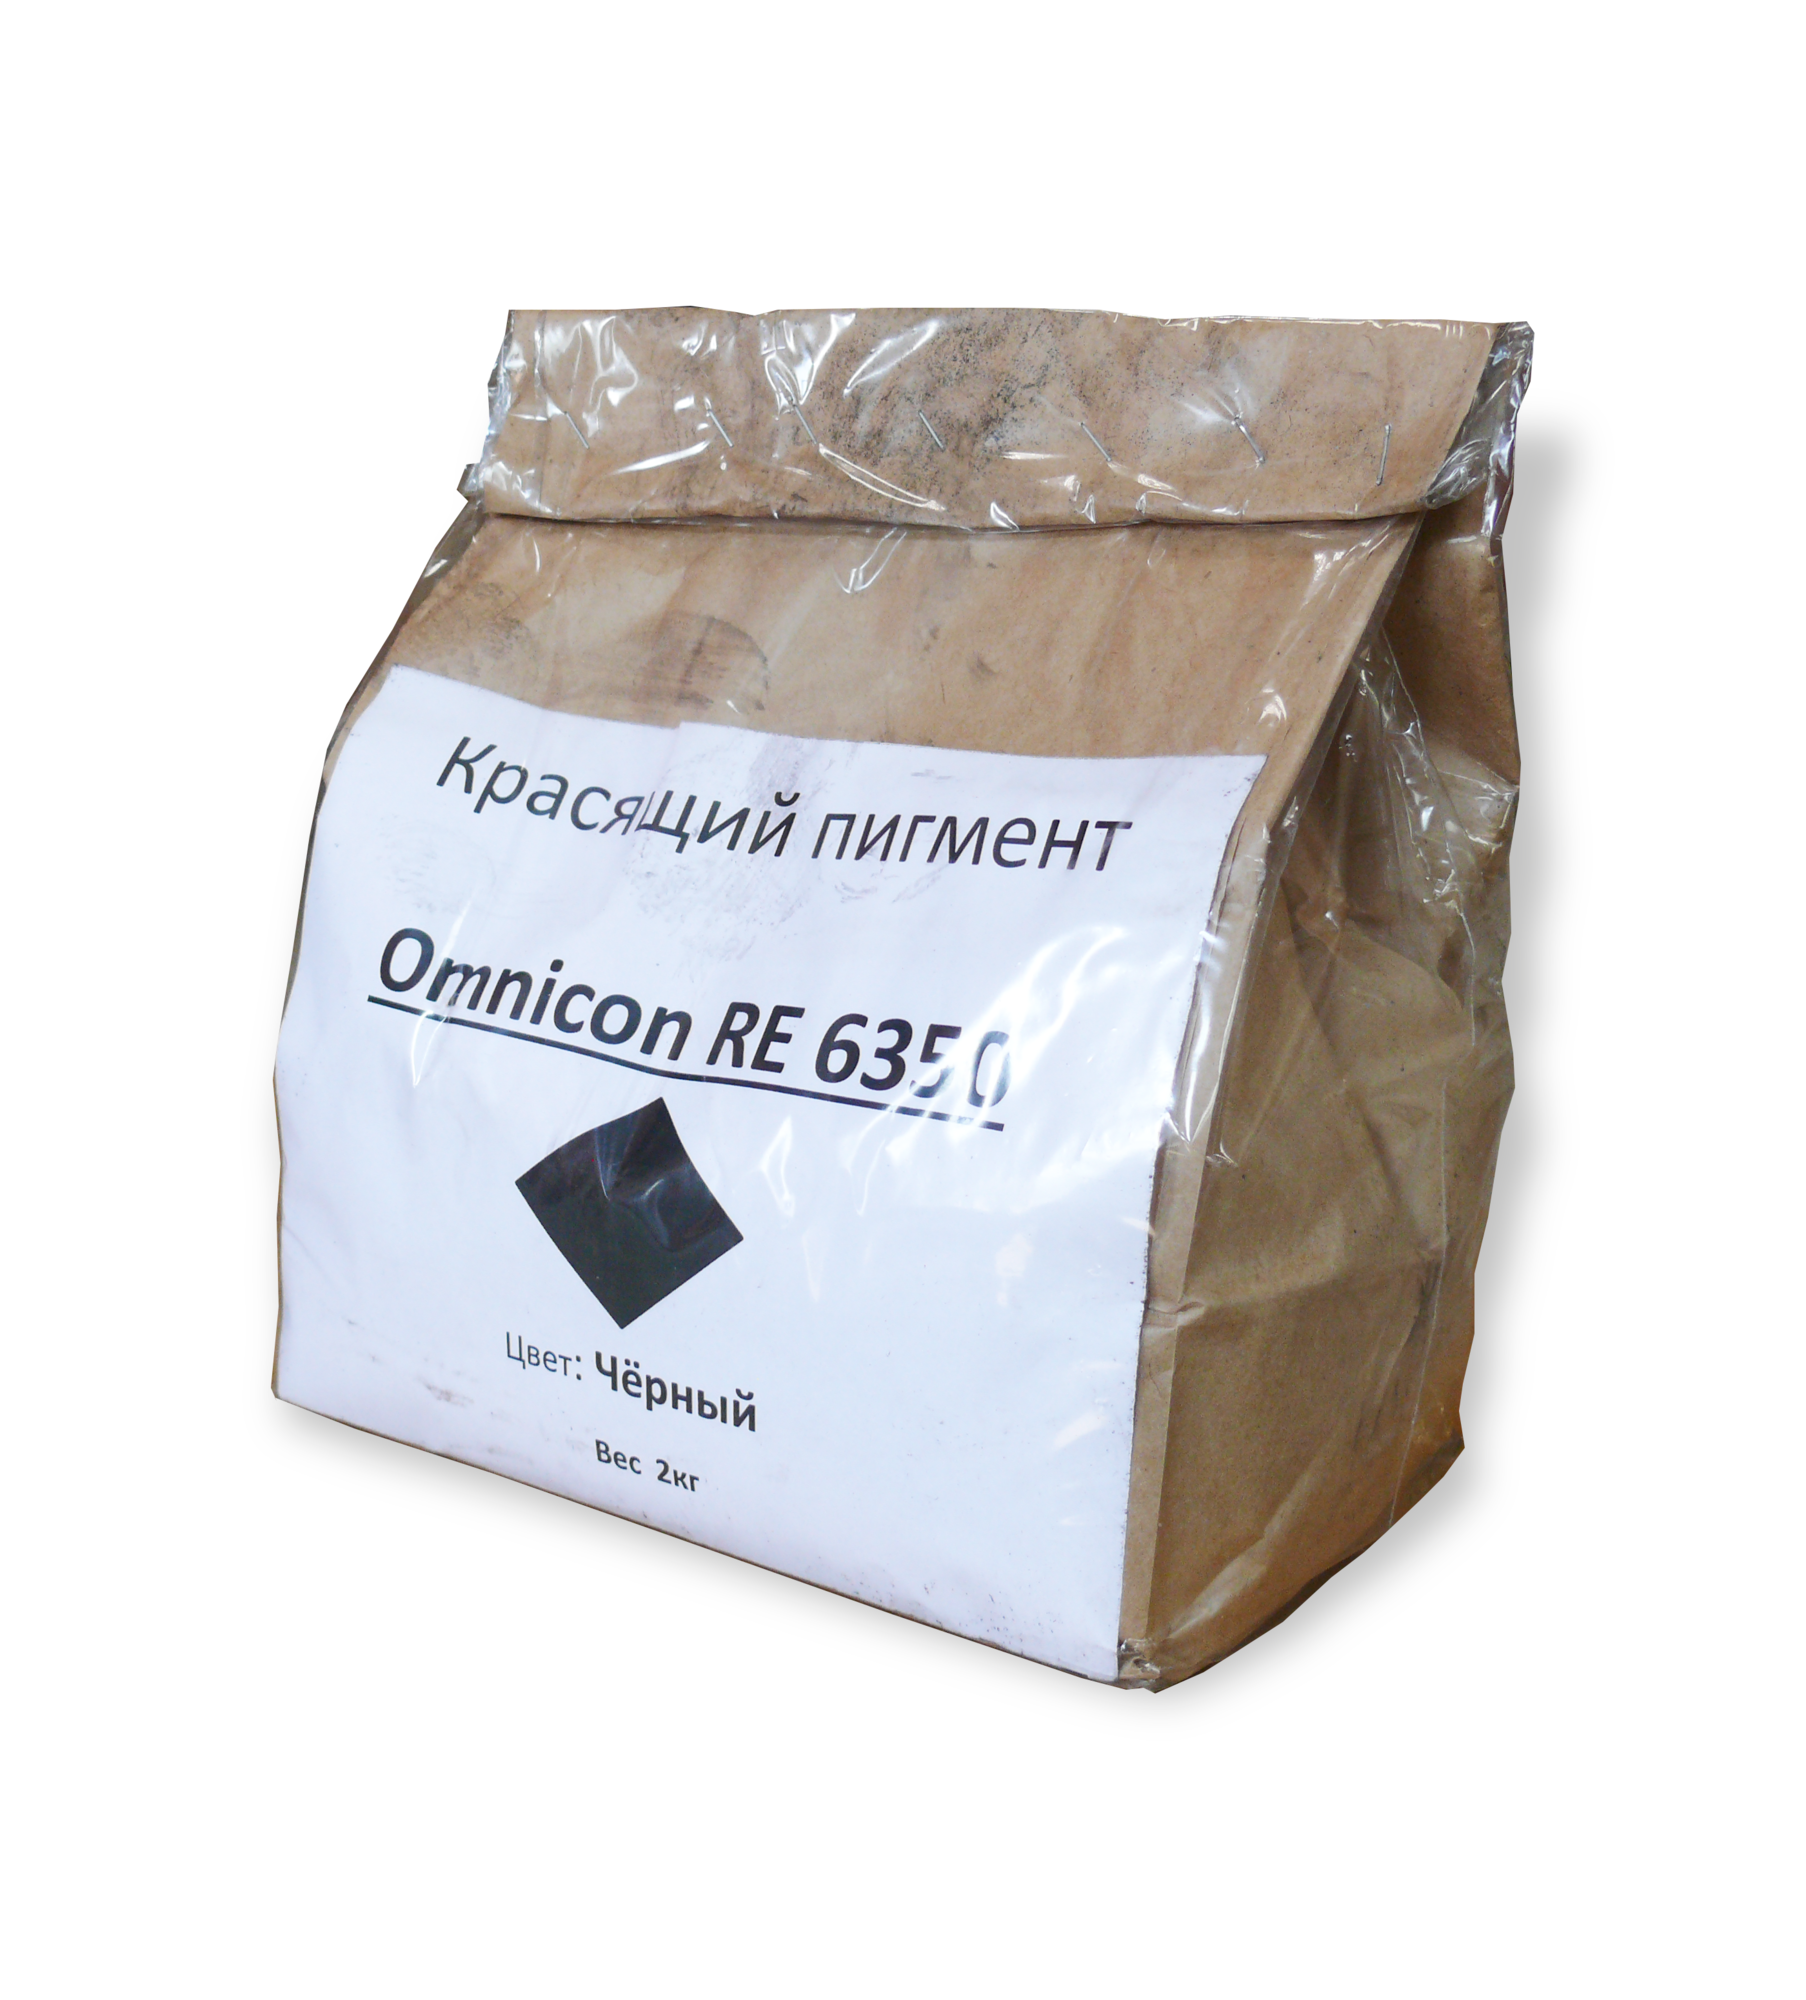 Пигмент для бетона железооксидный Omnicon RE 6350 черный, 2 кг, Дания